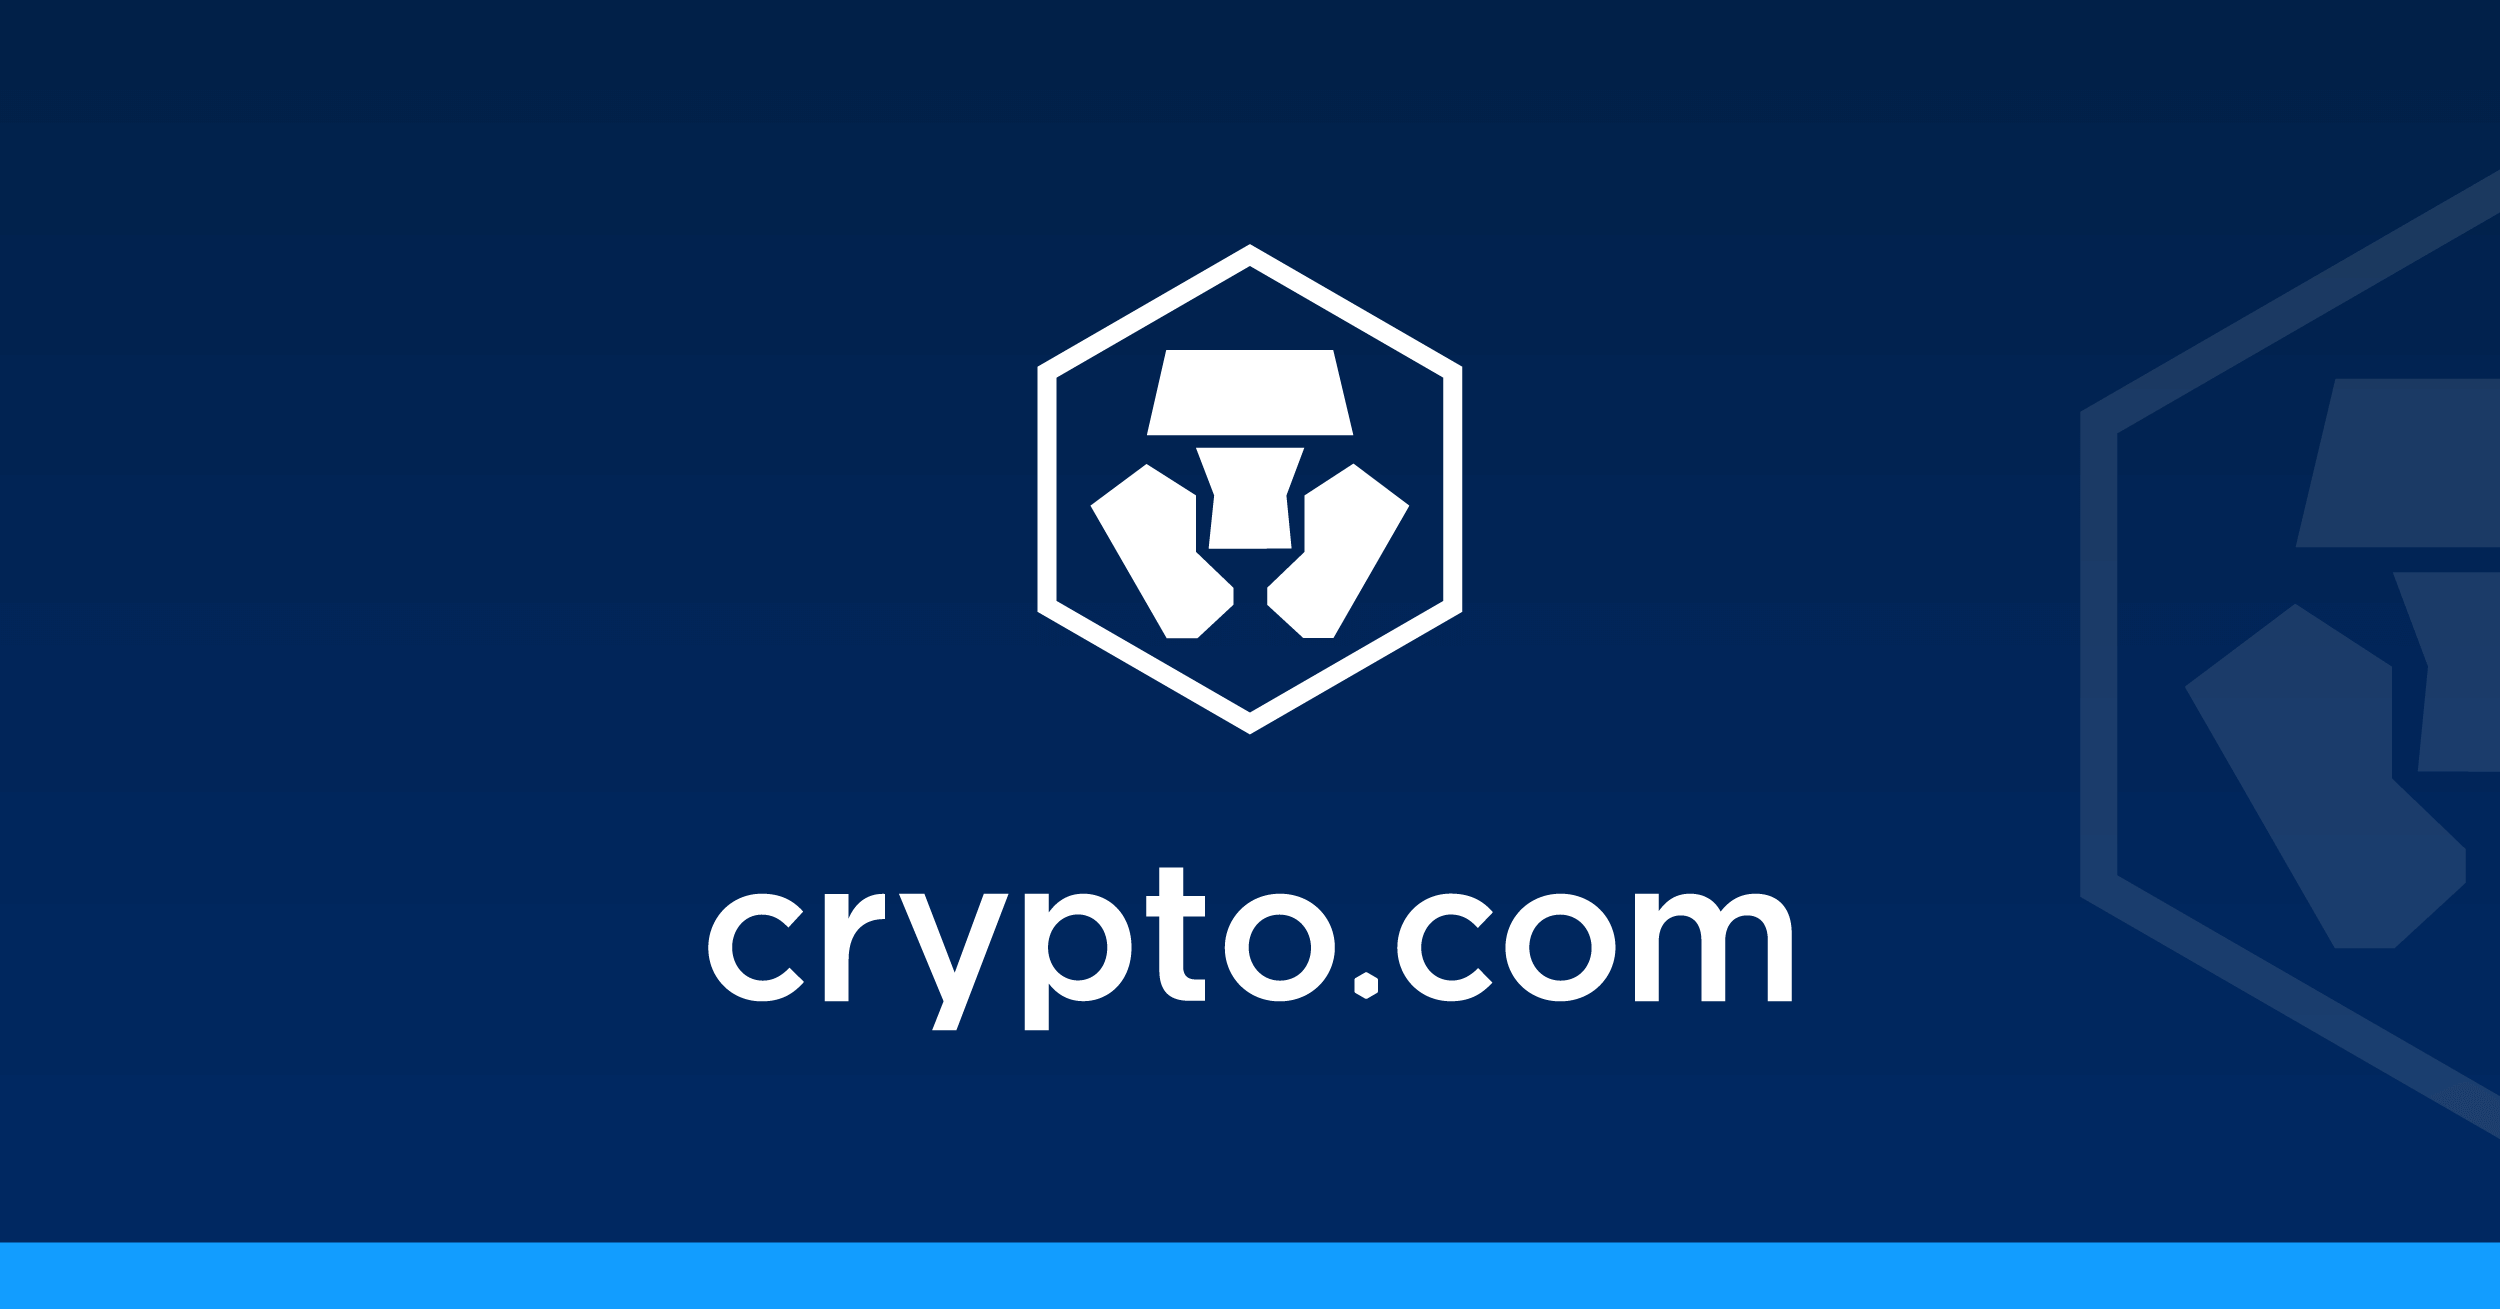 crypto.com arena logo